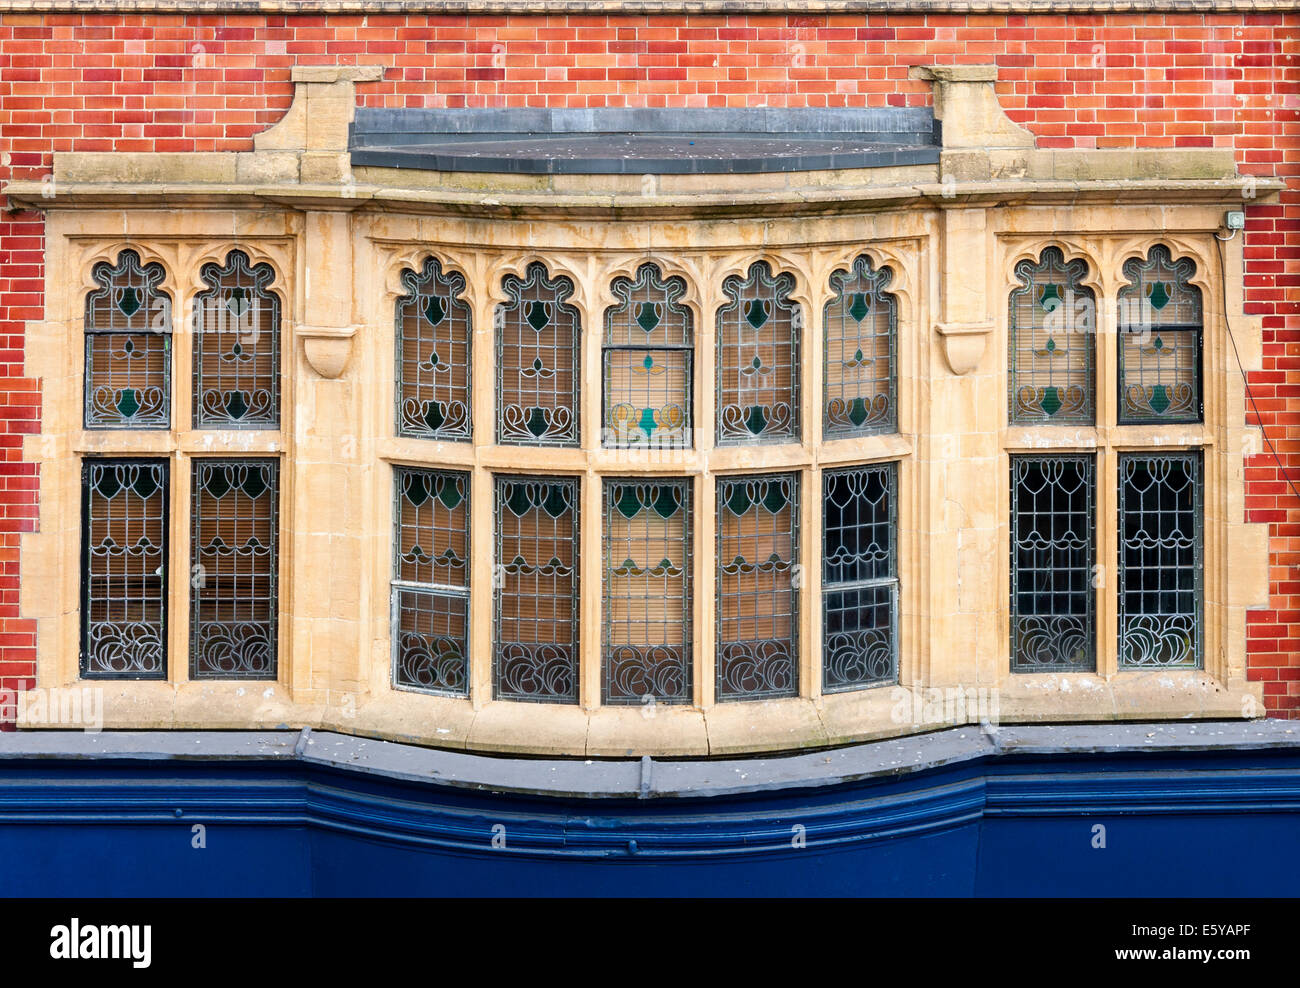 Un vitrail fenêtre en baie au-dessus d'une vitrine sur Broad Street, Reading, England, GB, UK Banque D'Images